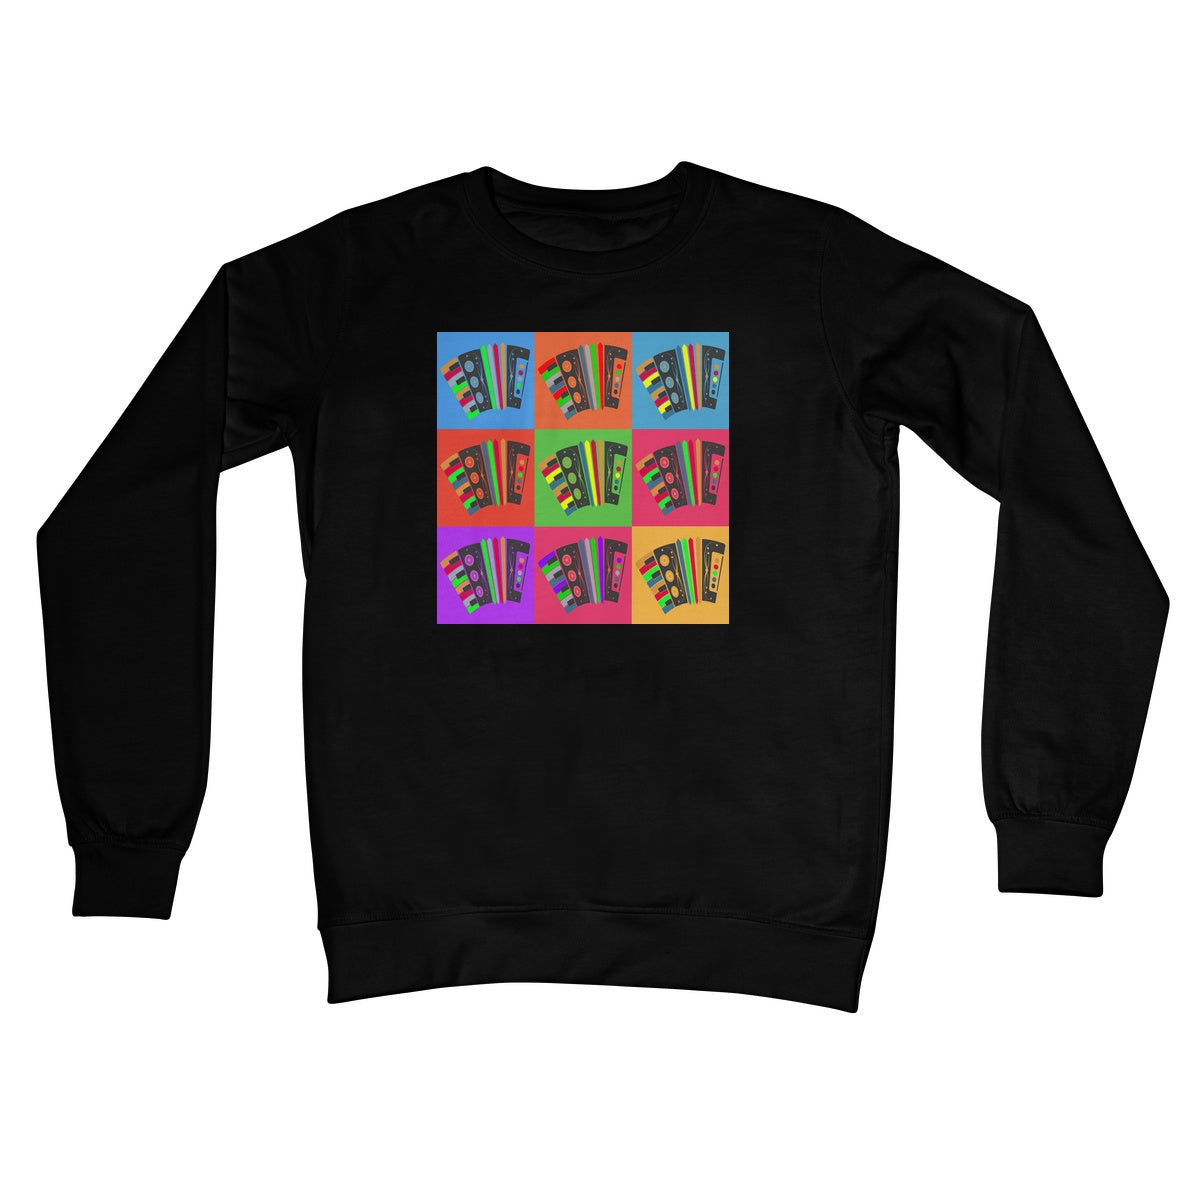 Warhol Style Accordions Crew Neck Sweatshirt